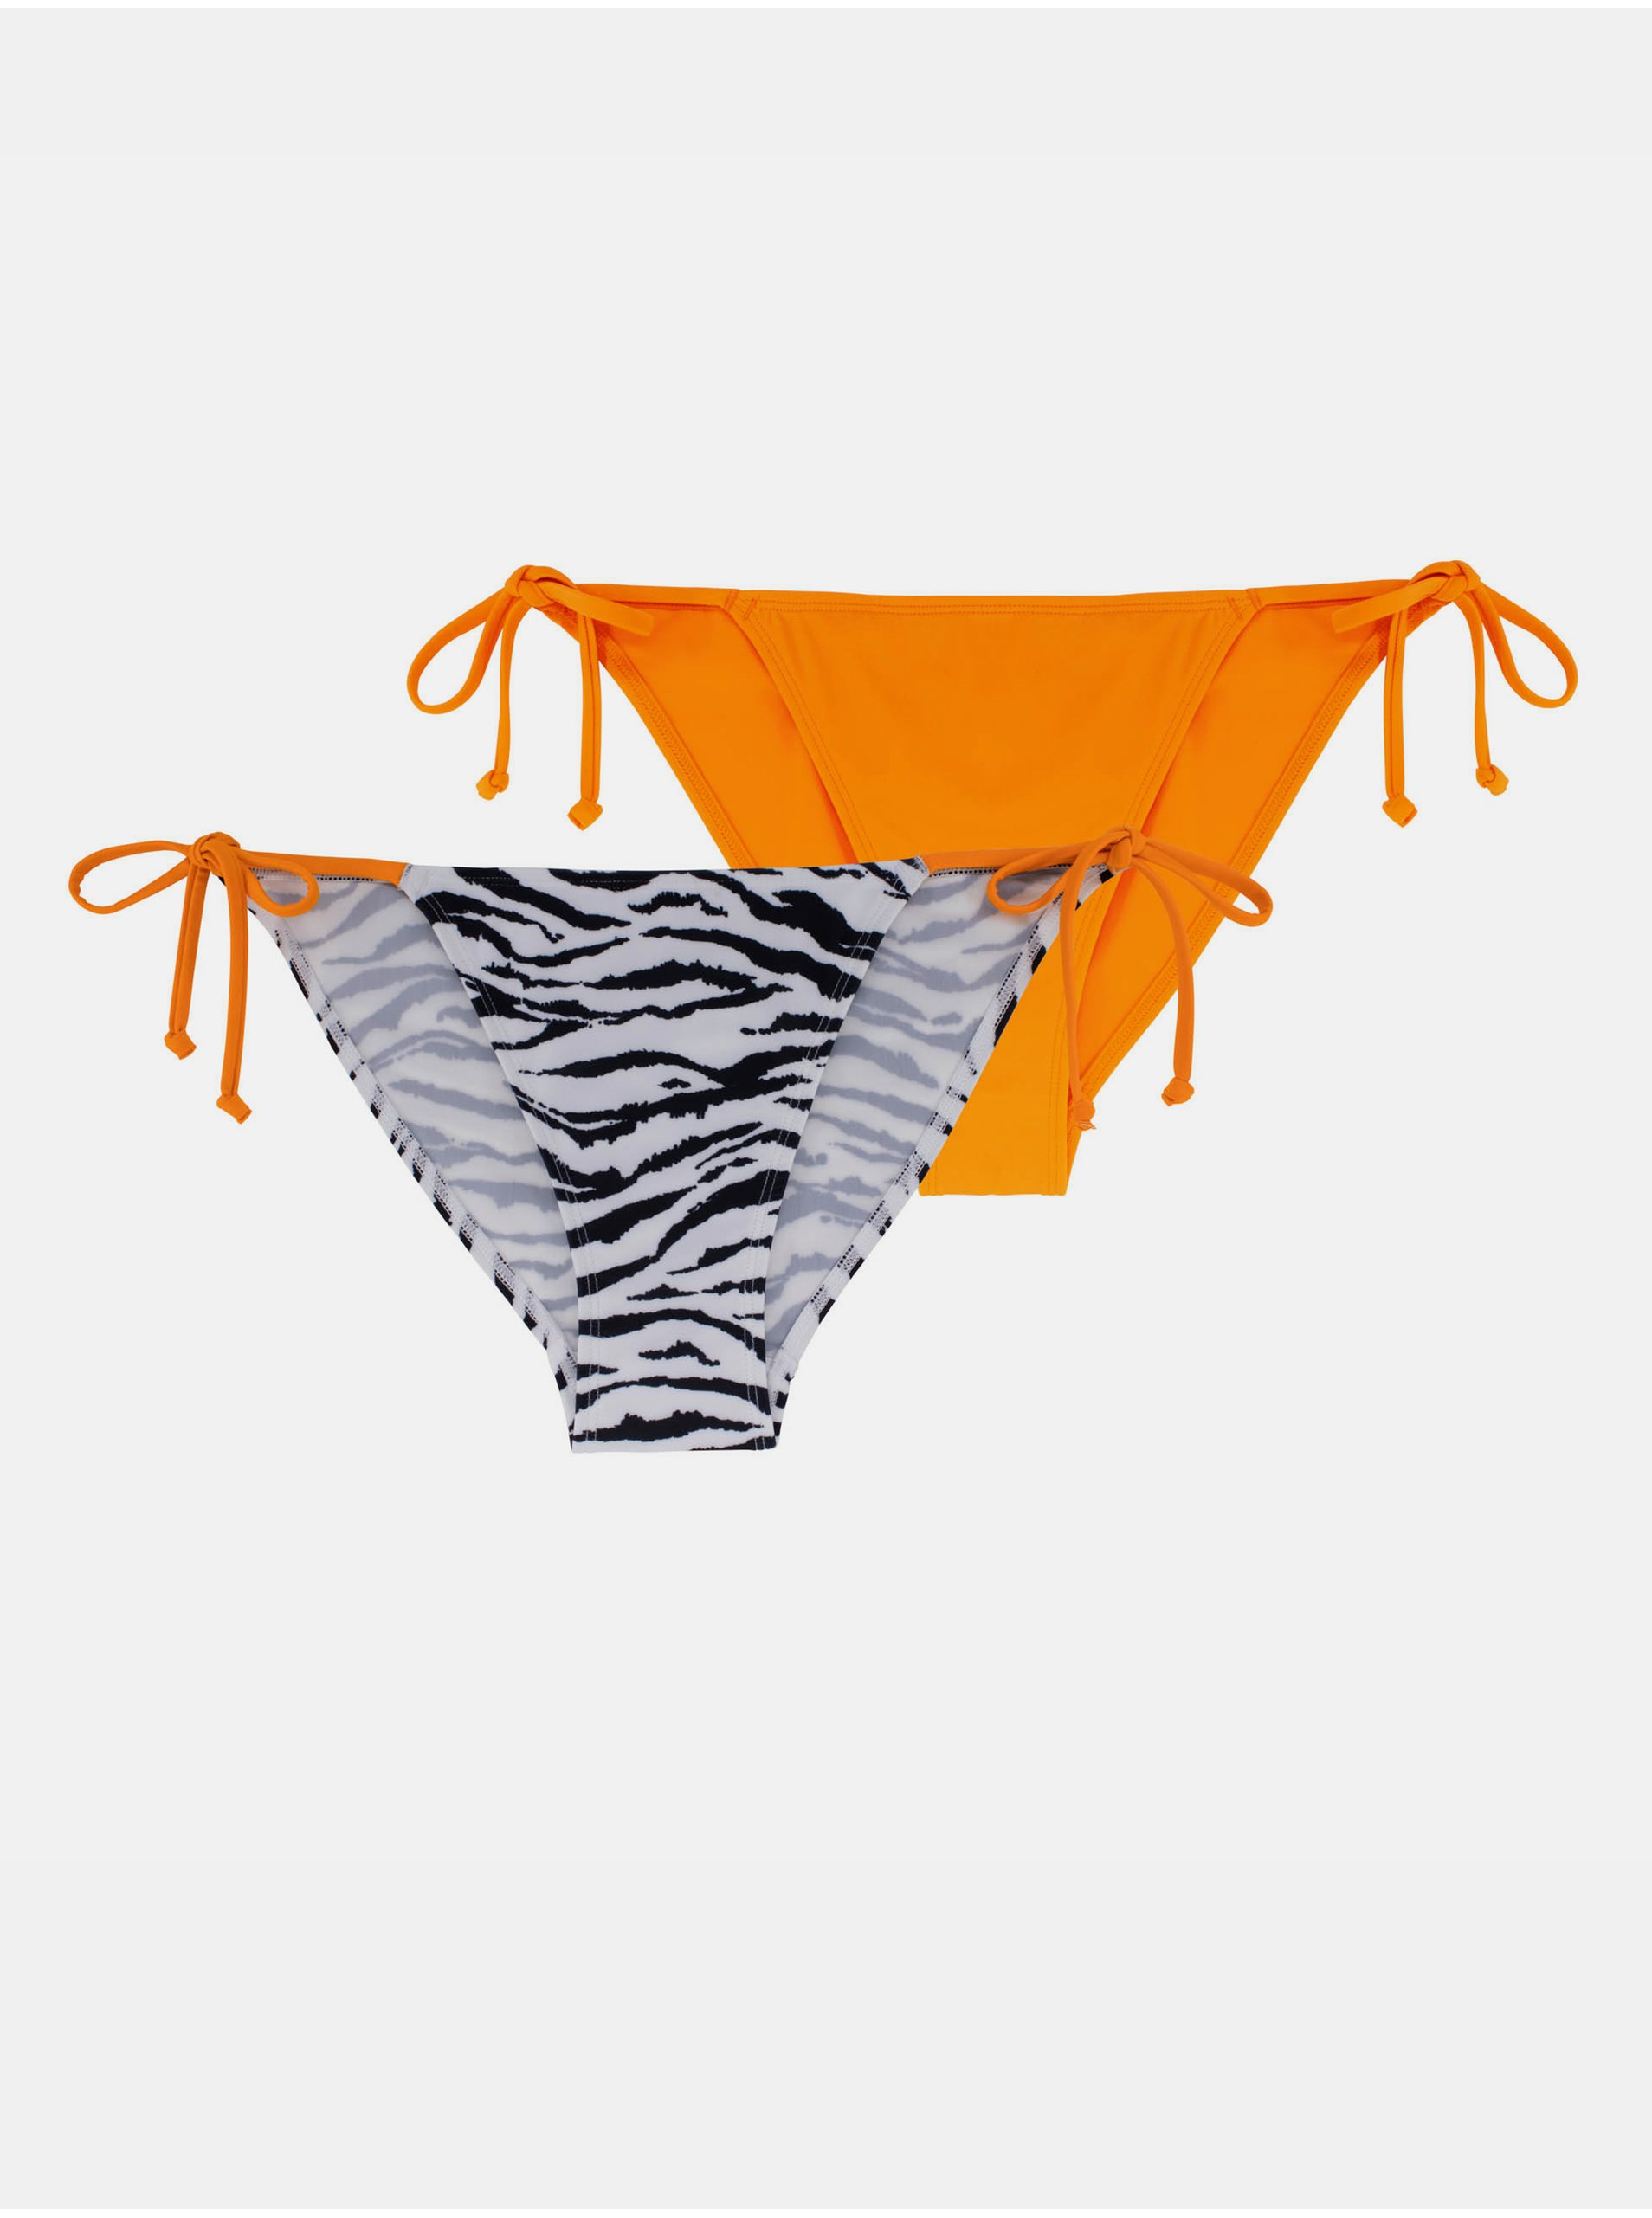 E-shop Súprava dvoch dámskych spodných dielov plaviek v oranžovej a bielej farbe DORINA Avalon